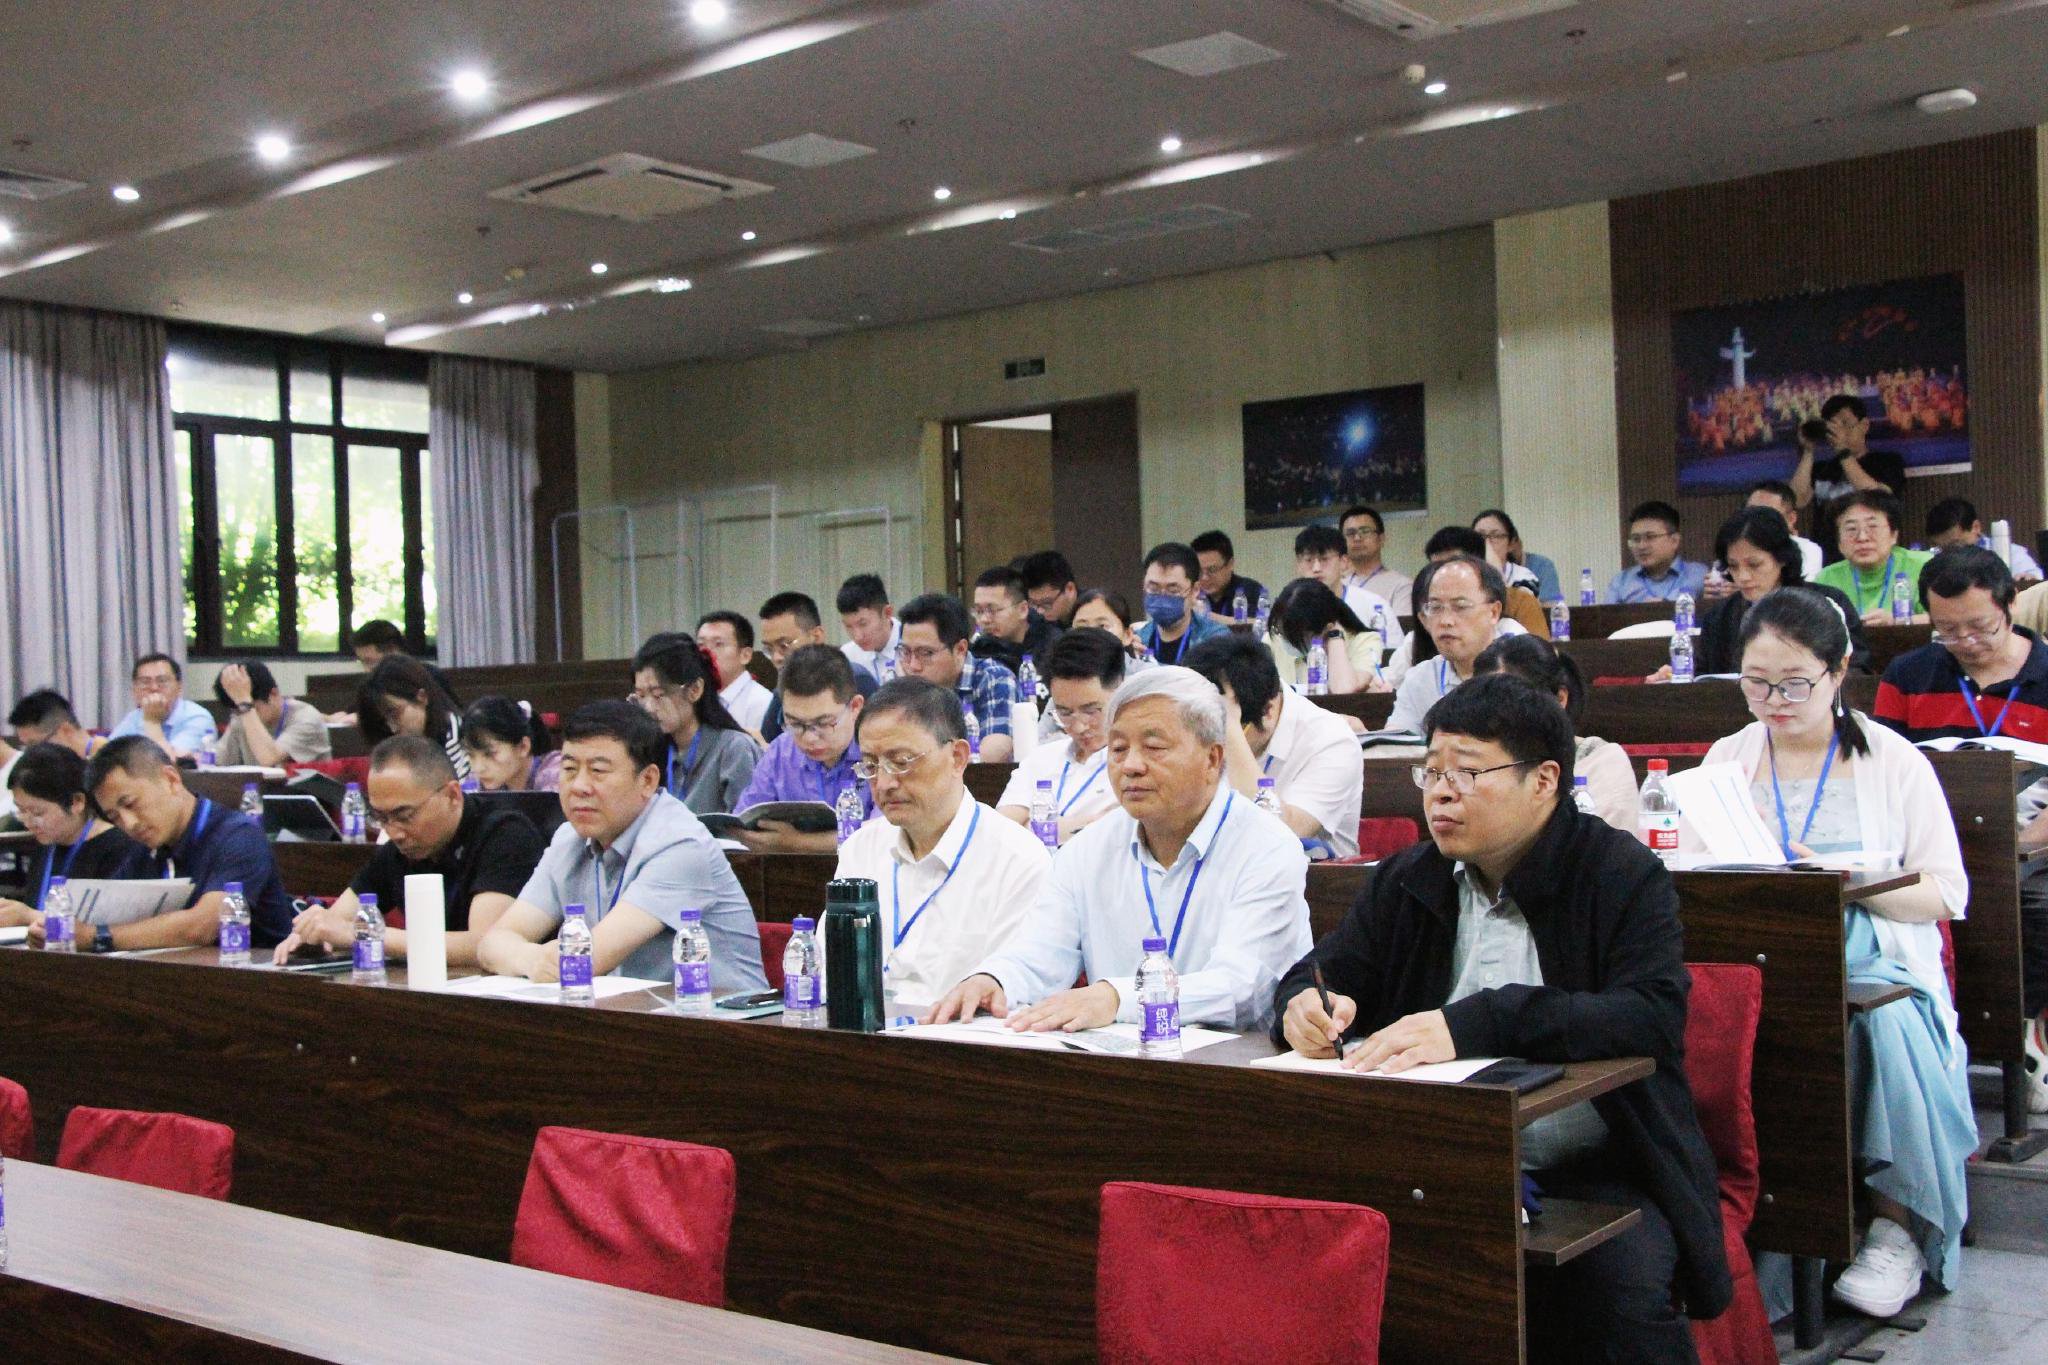 5月18日上午,会议开幕式于杭州师范大学人文学院弘毅厅举行,由杭州